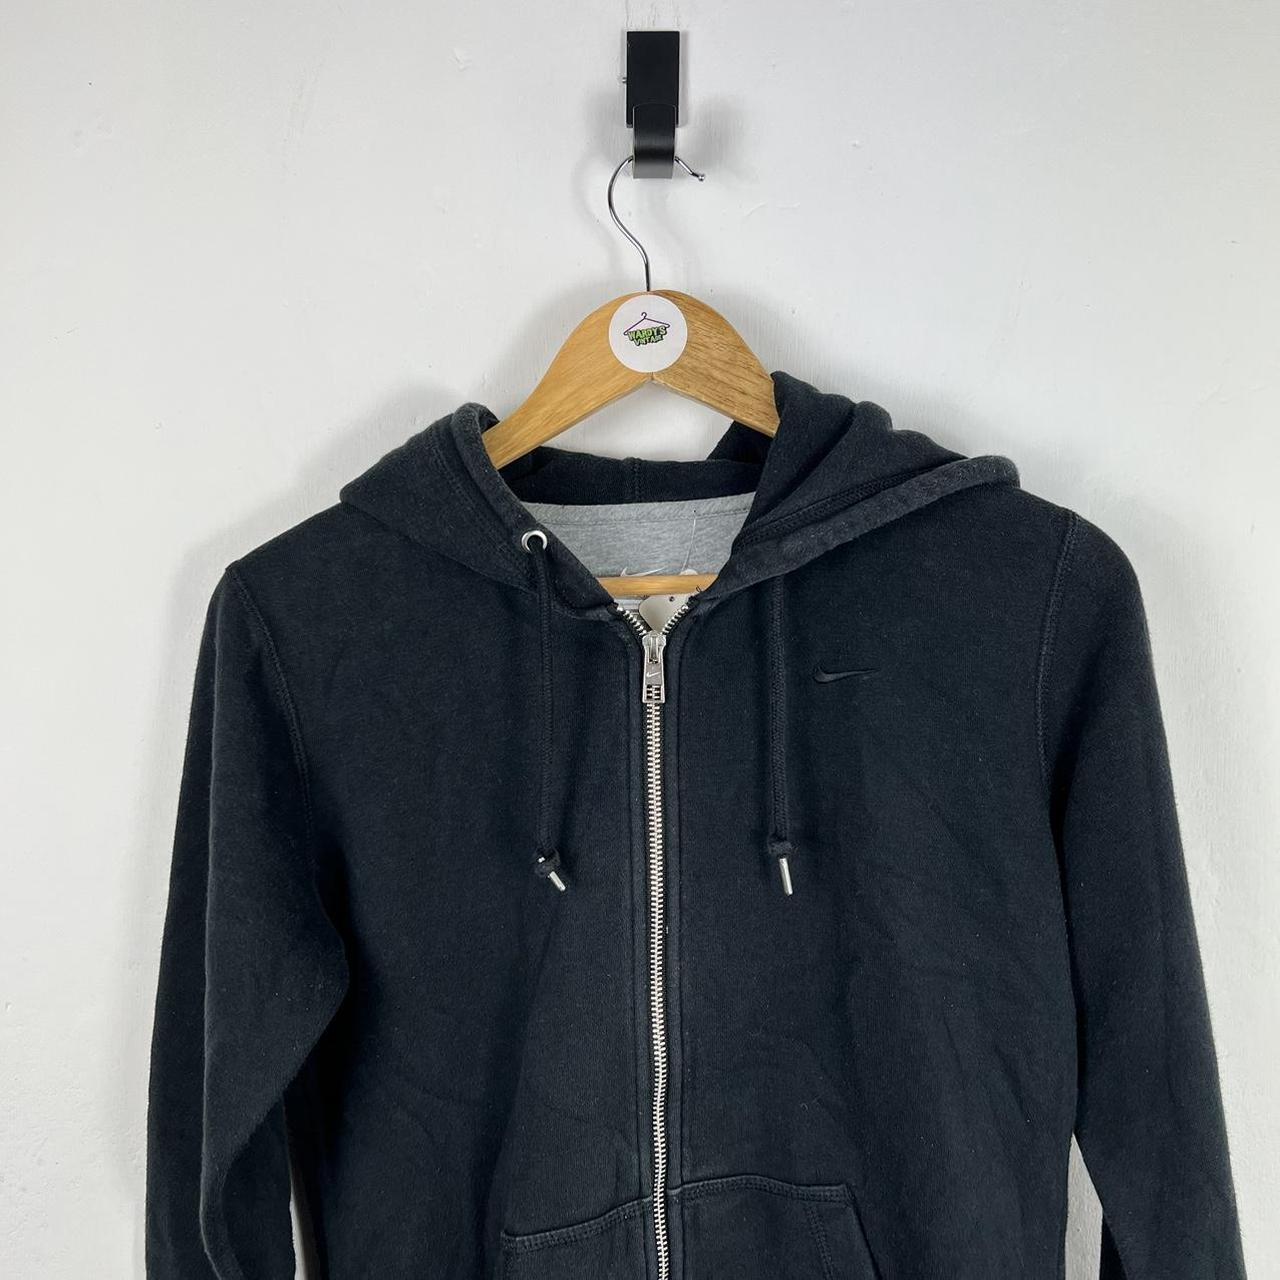 Nike zip up hoodie small